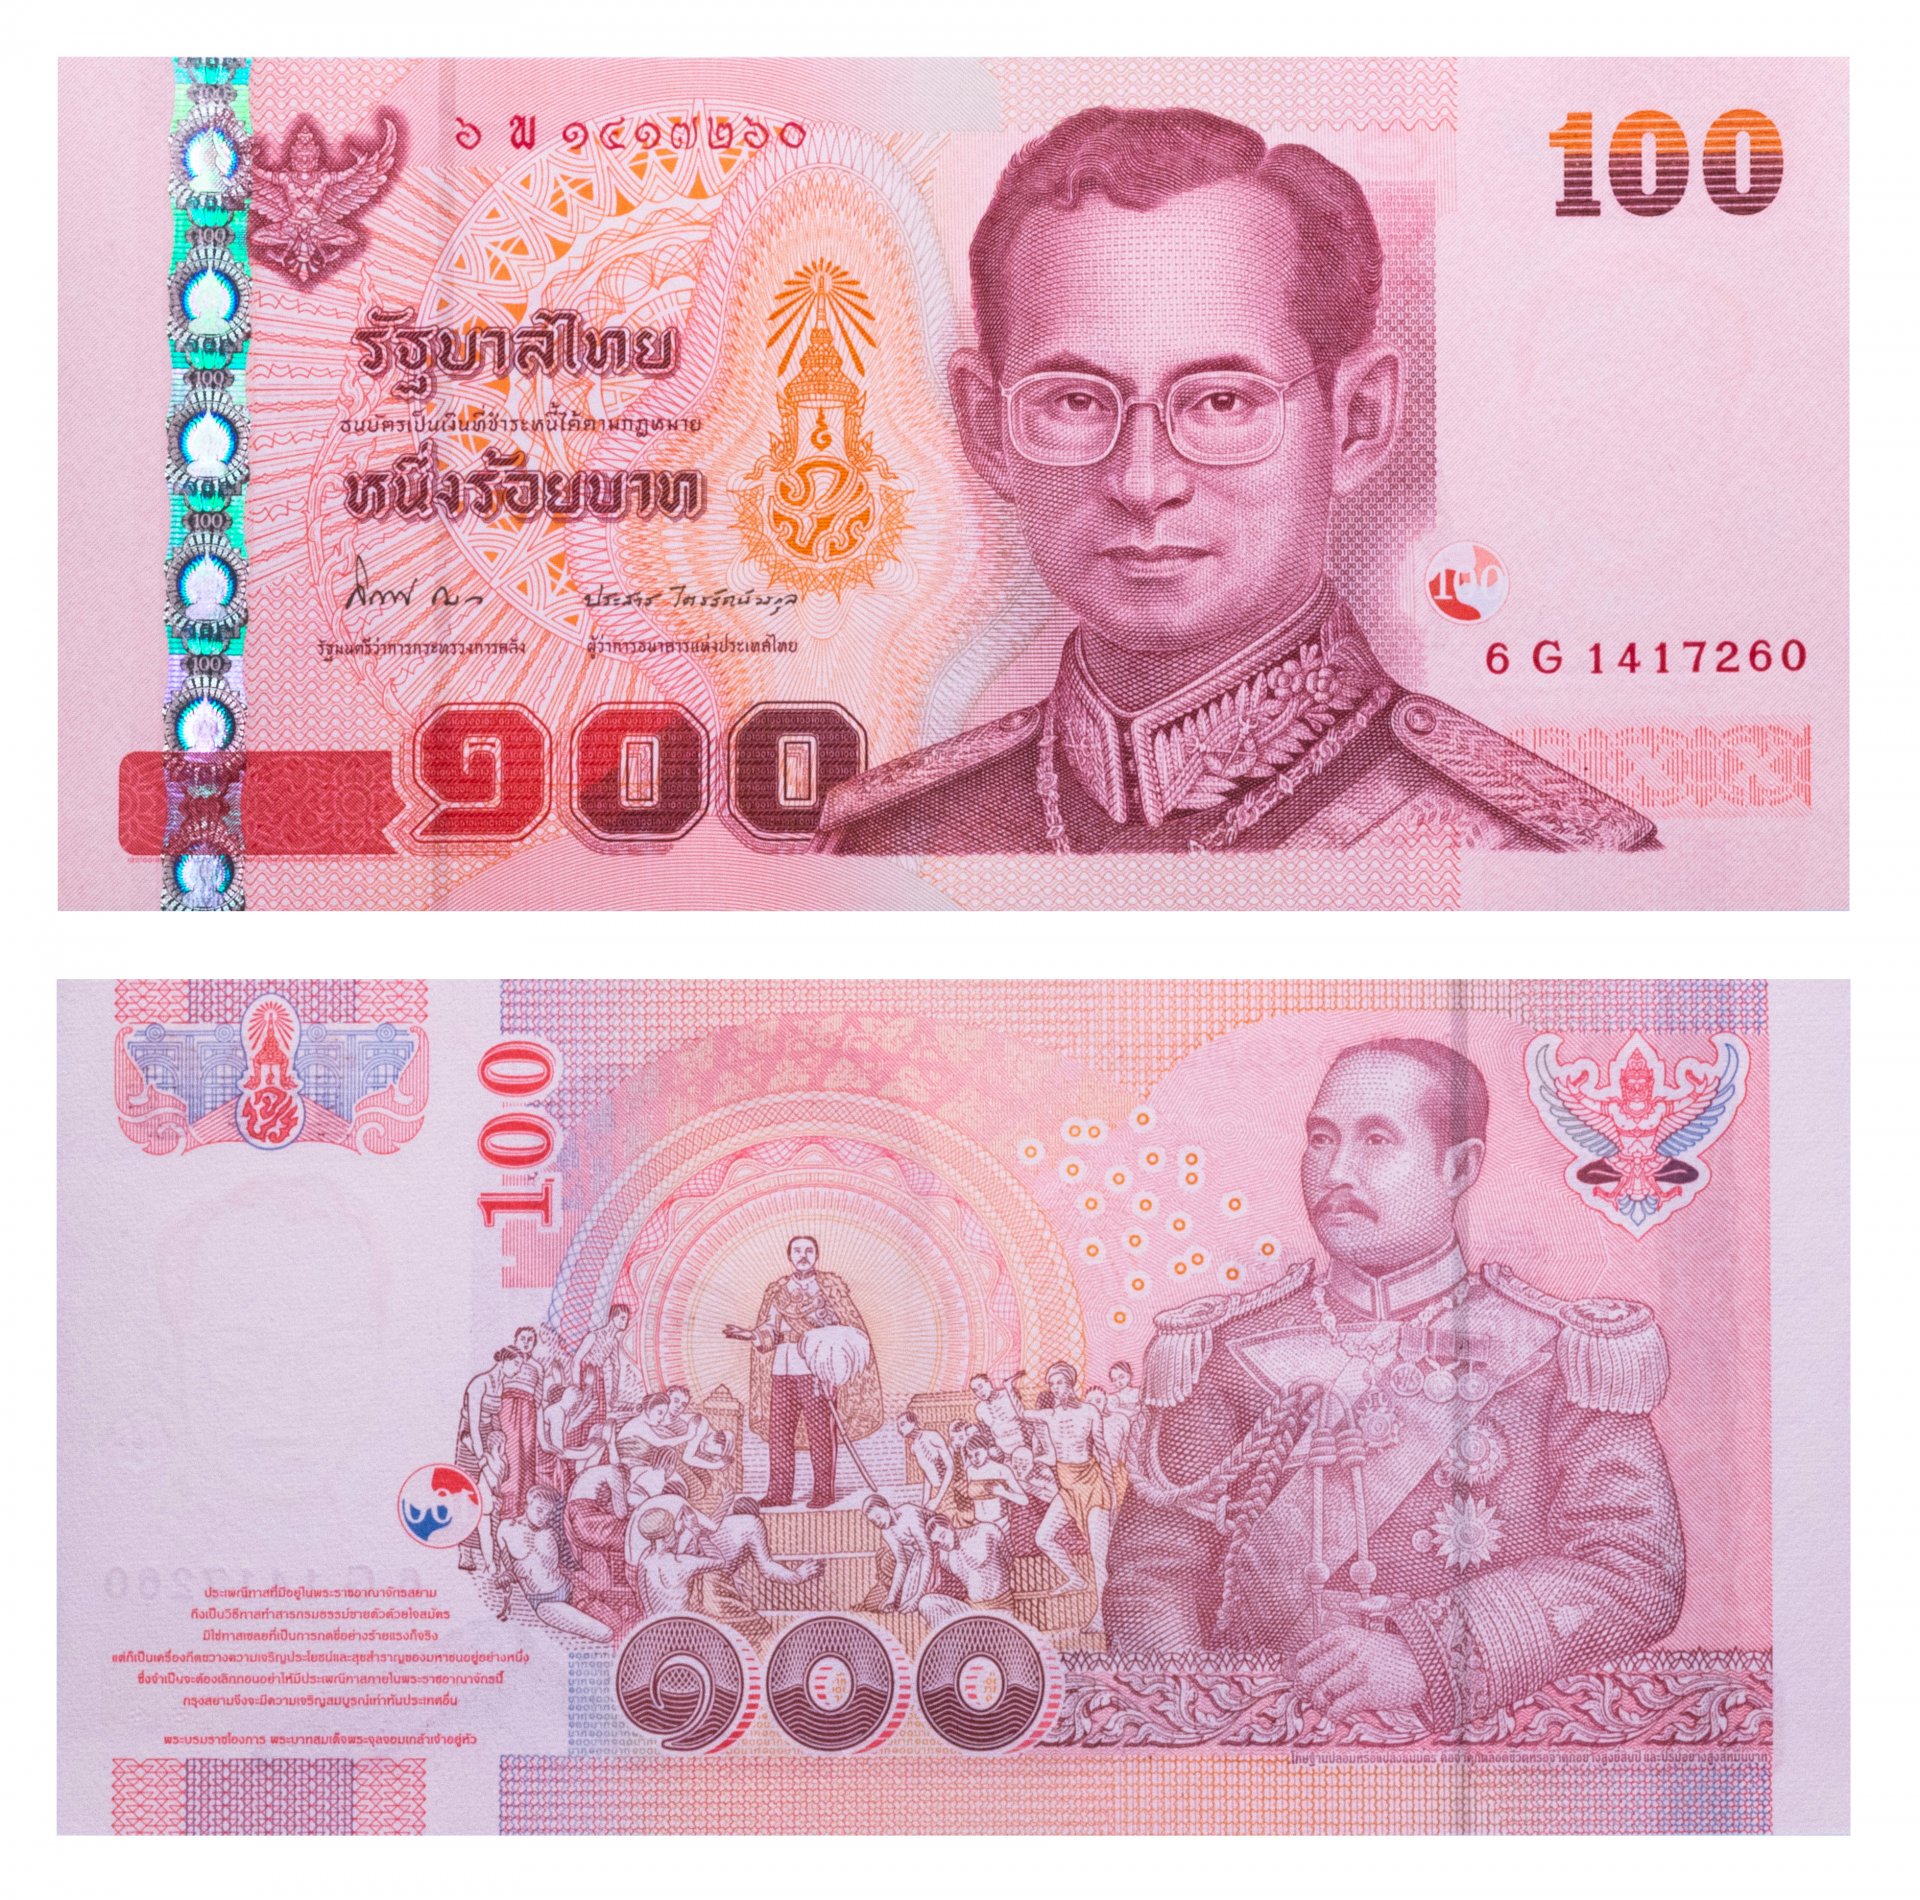 200 бат. Купюра Тайланда 100 бат. Батт 100 купюра бат. Тайская купюра 100 бат. Банкноты Таиланда 100 бат в рублях.